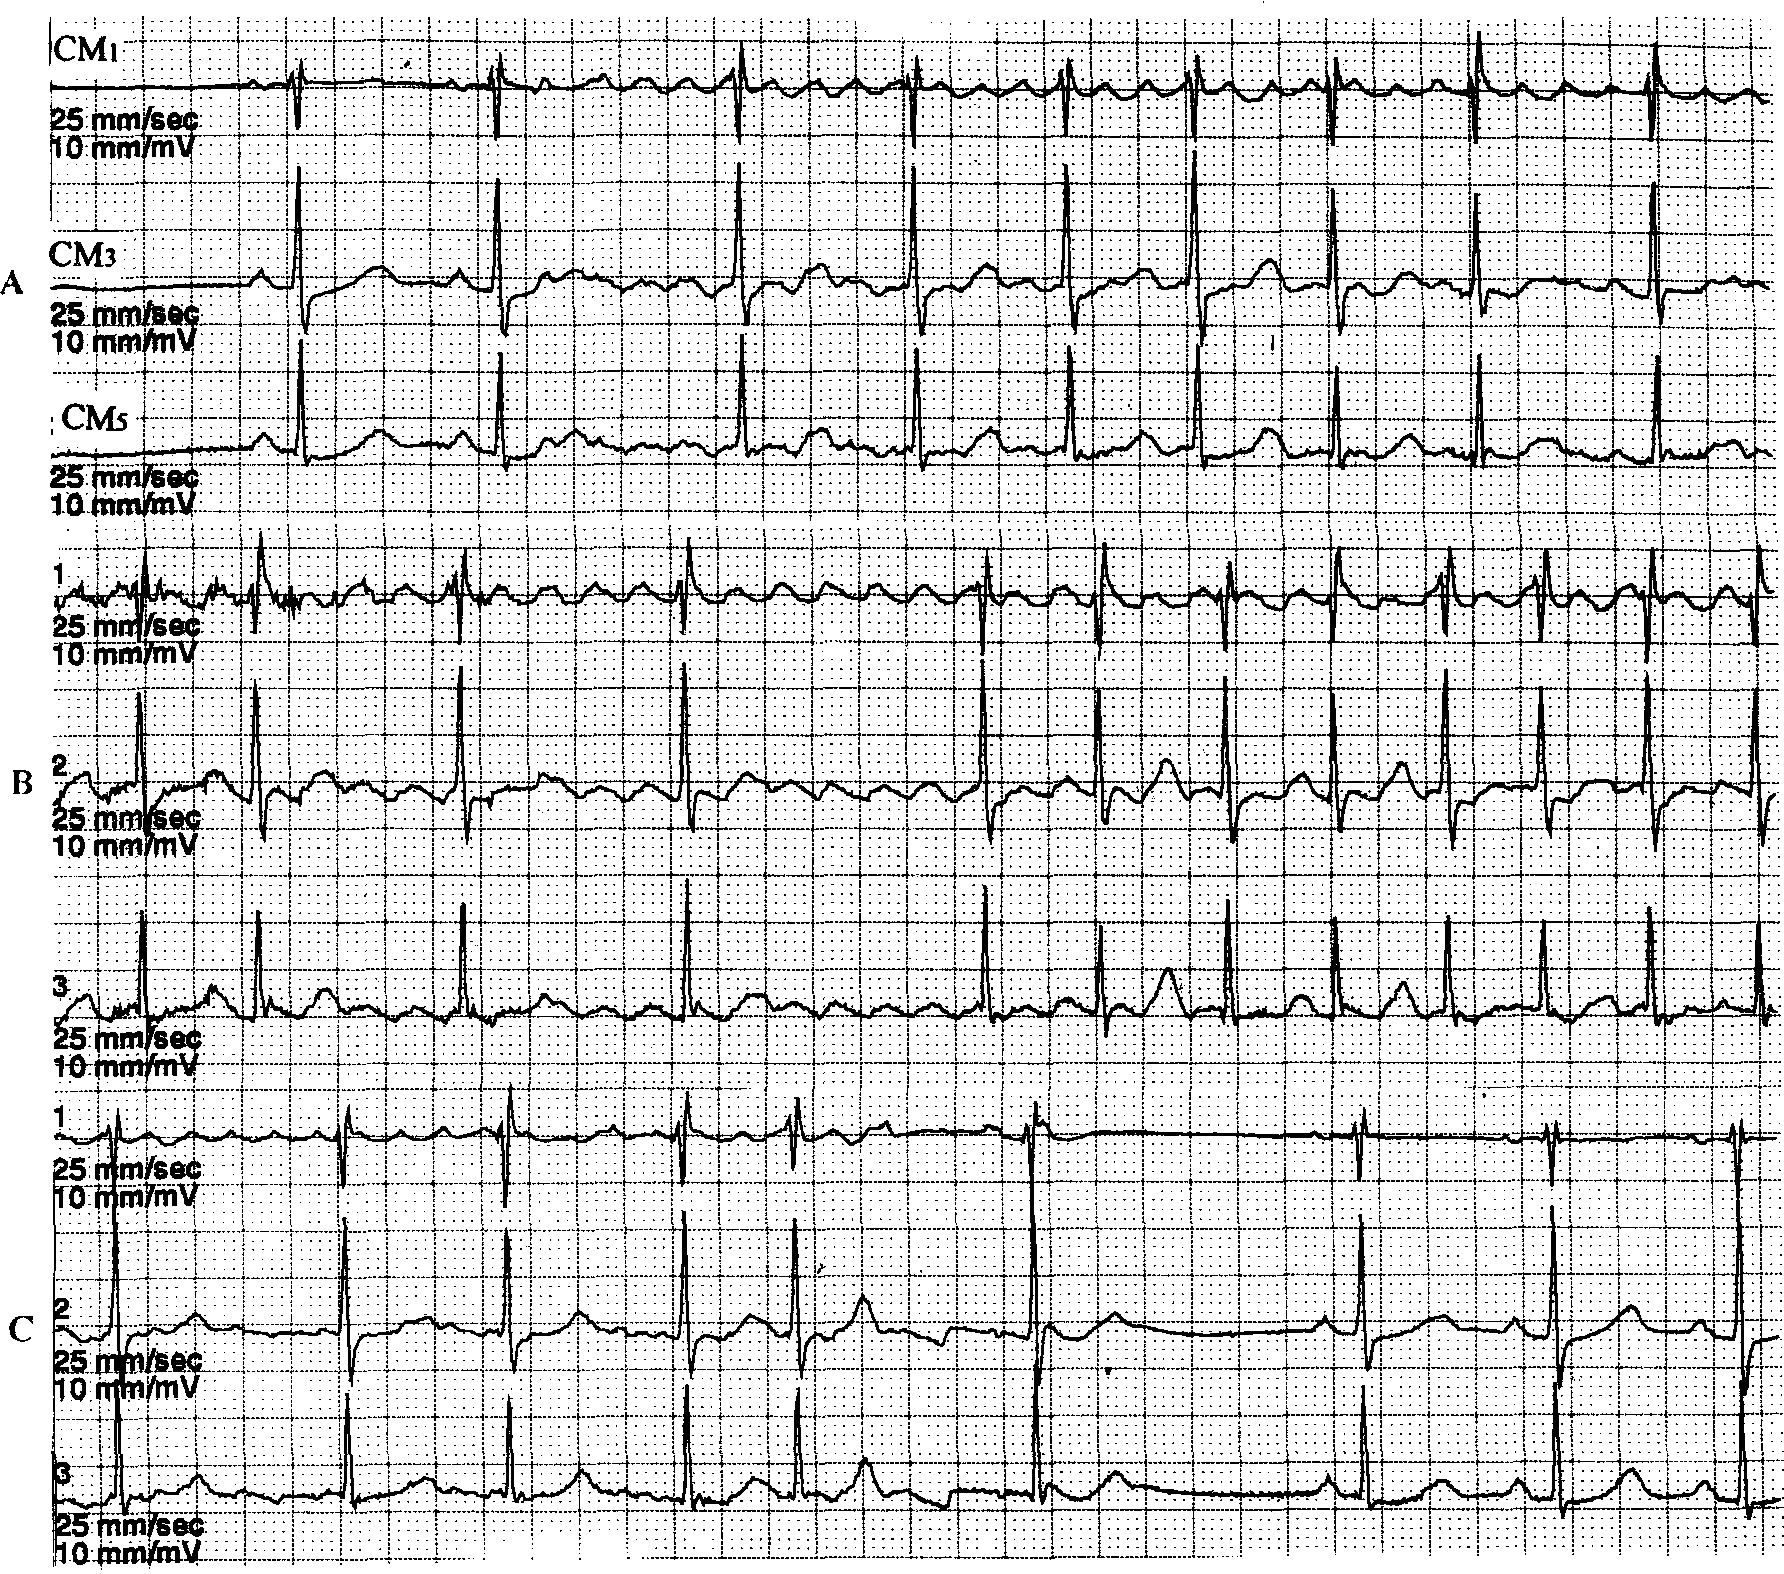 心电图上以规则的f波为主,其间夹杂有短暂的心房颤动的f波(图10